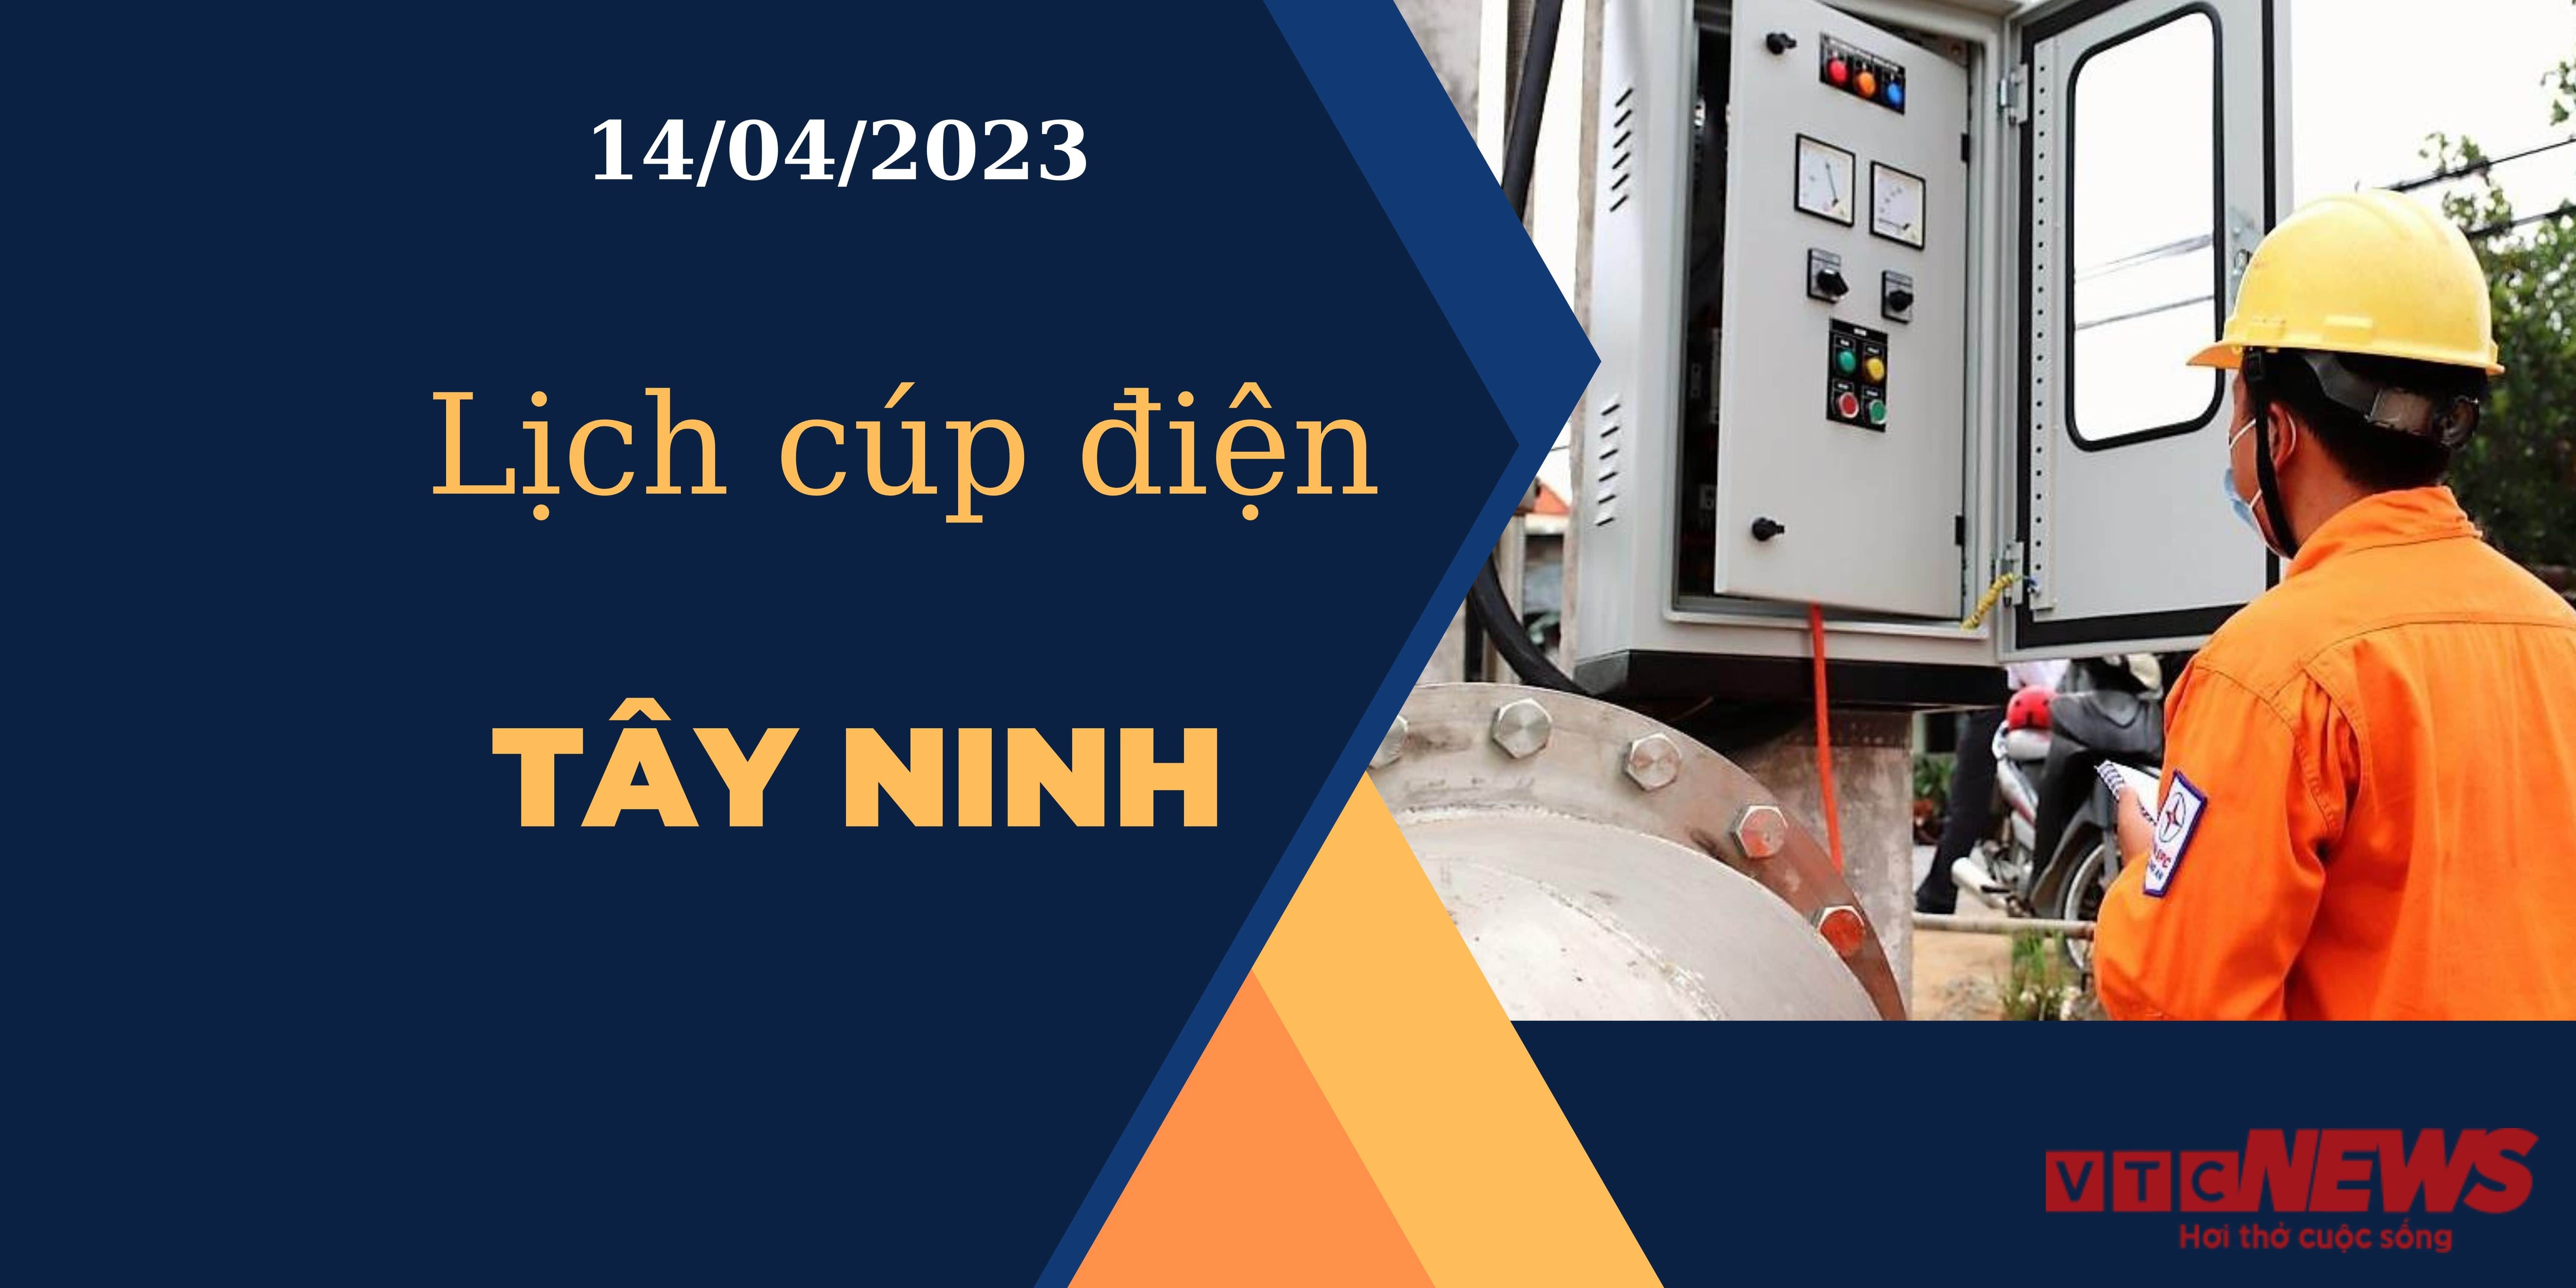 Lịch cúp điện hôm nay ngày 14/04/2023 tại Tây Ninh - 1